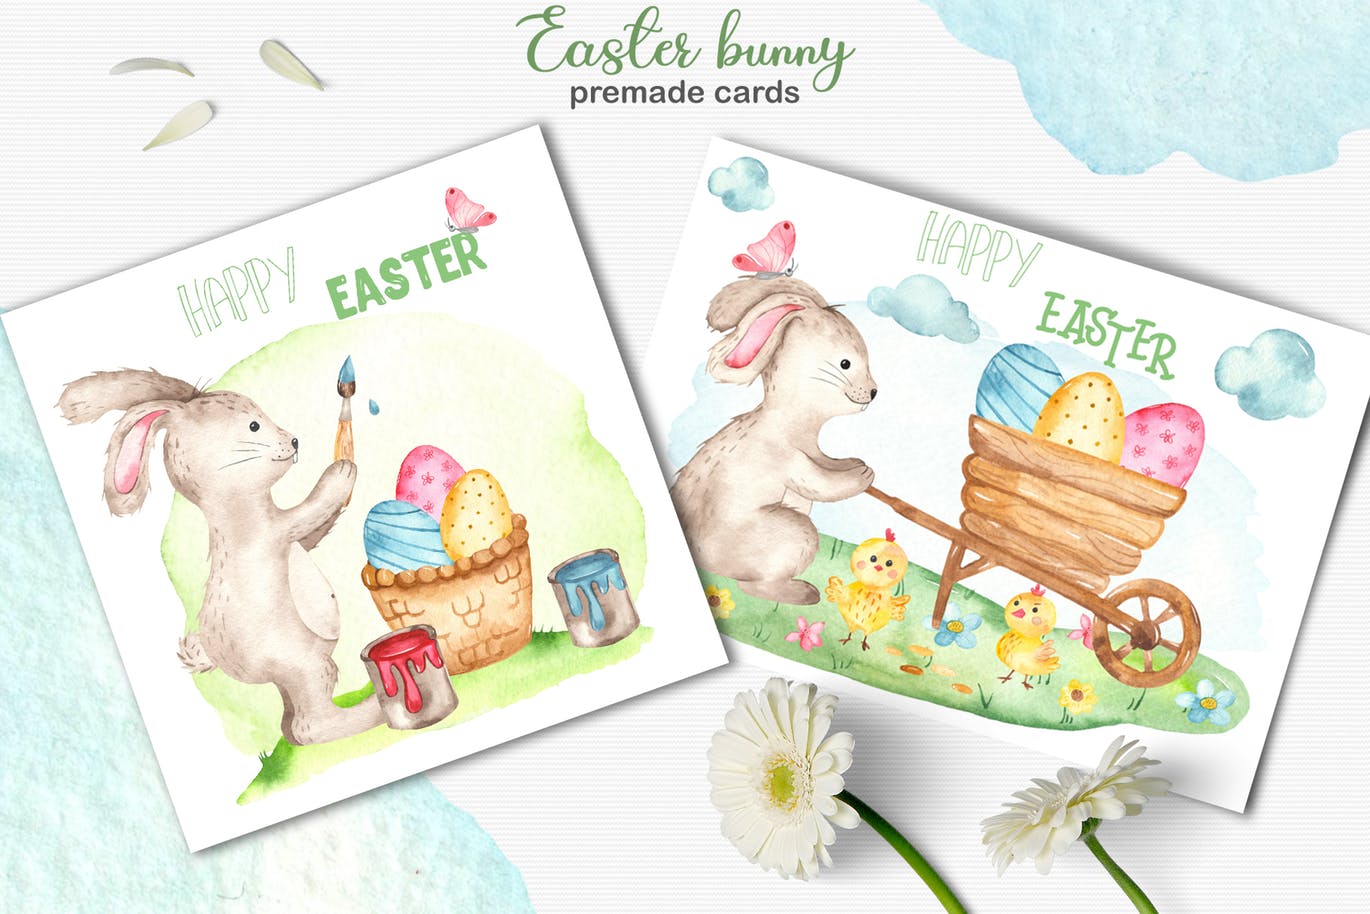 复活节兔子水彩手绘素材套装 Watercolor Easter Bunny collection插图(4)